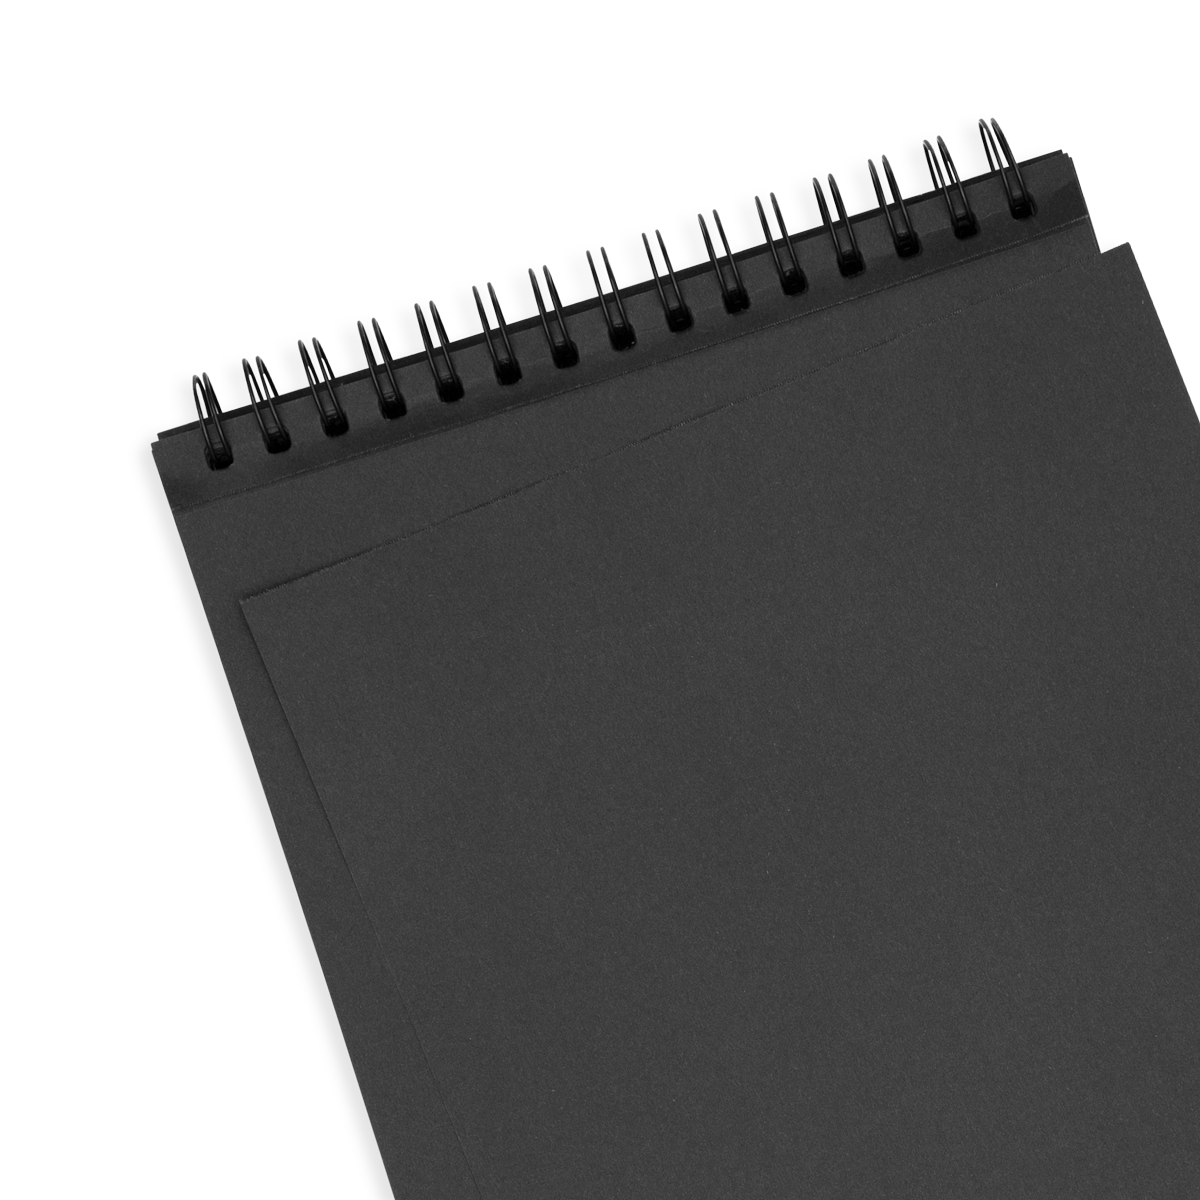 https://www.ooly.com/cdn/shop/products/118-SK-BLK-Black-DIY-Cover-Sketchbook-Large-CU1.png?v=1612204797&width=1200